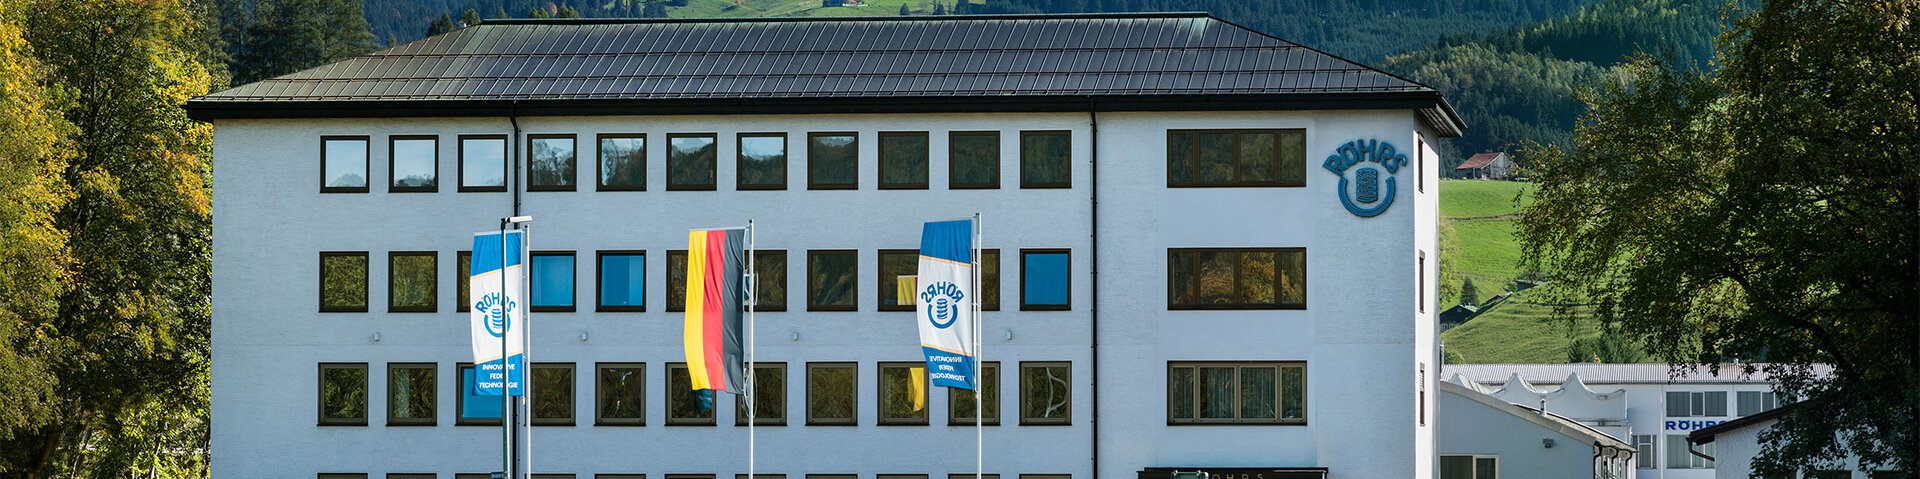 Das Röhrs Verwaltungsgebäude in Sonthofen von vorne fotografiert mit den allgäuer Alpen im Hintergrund